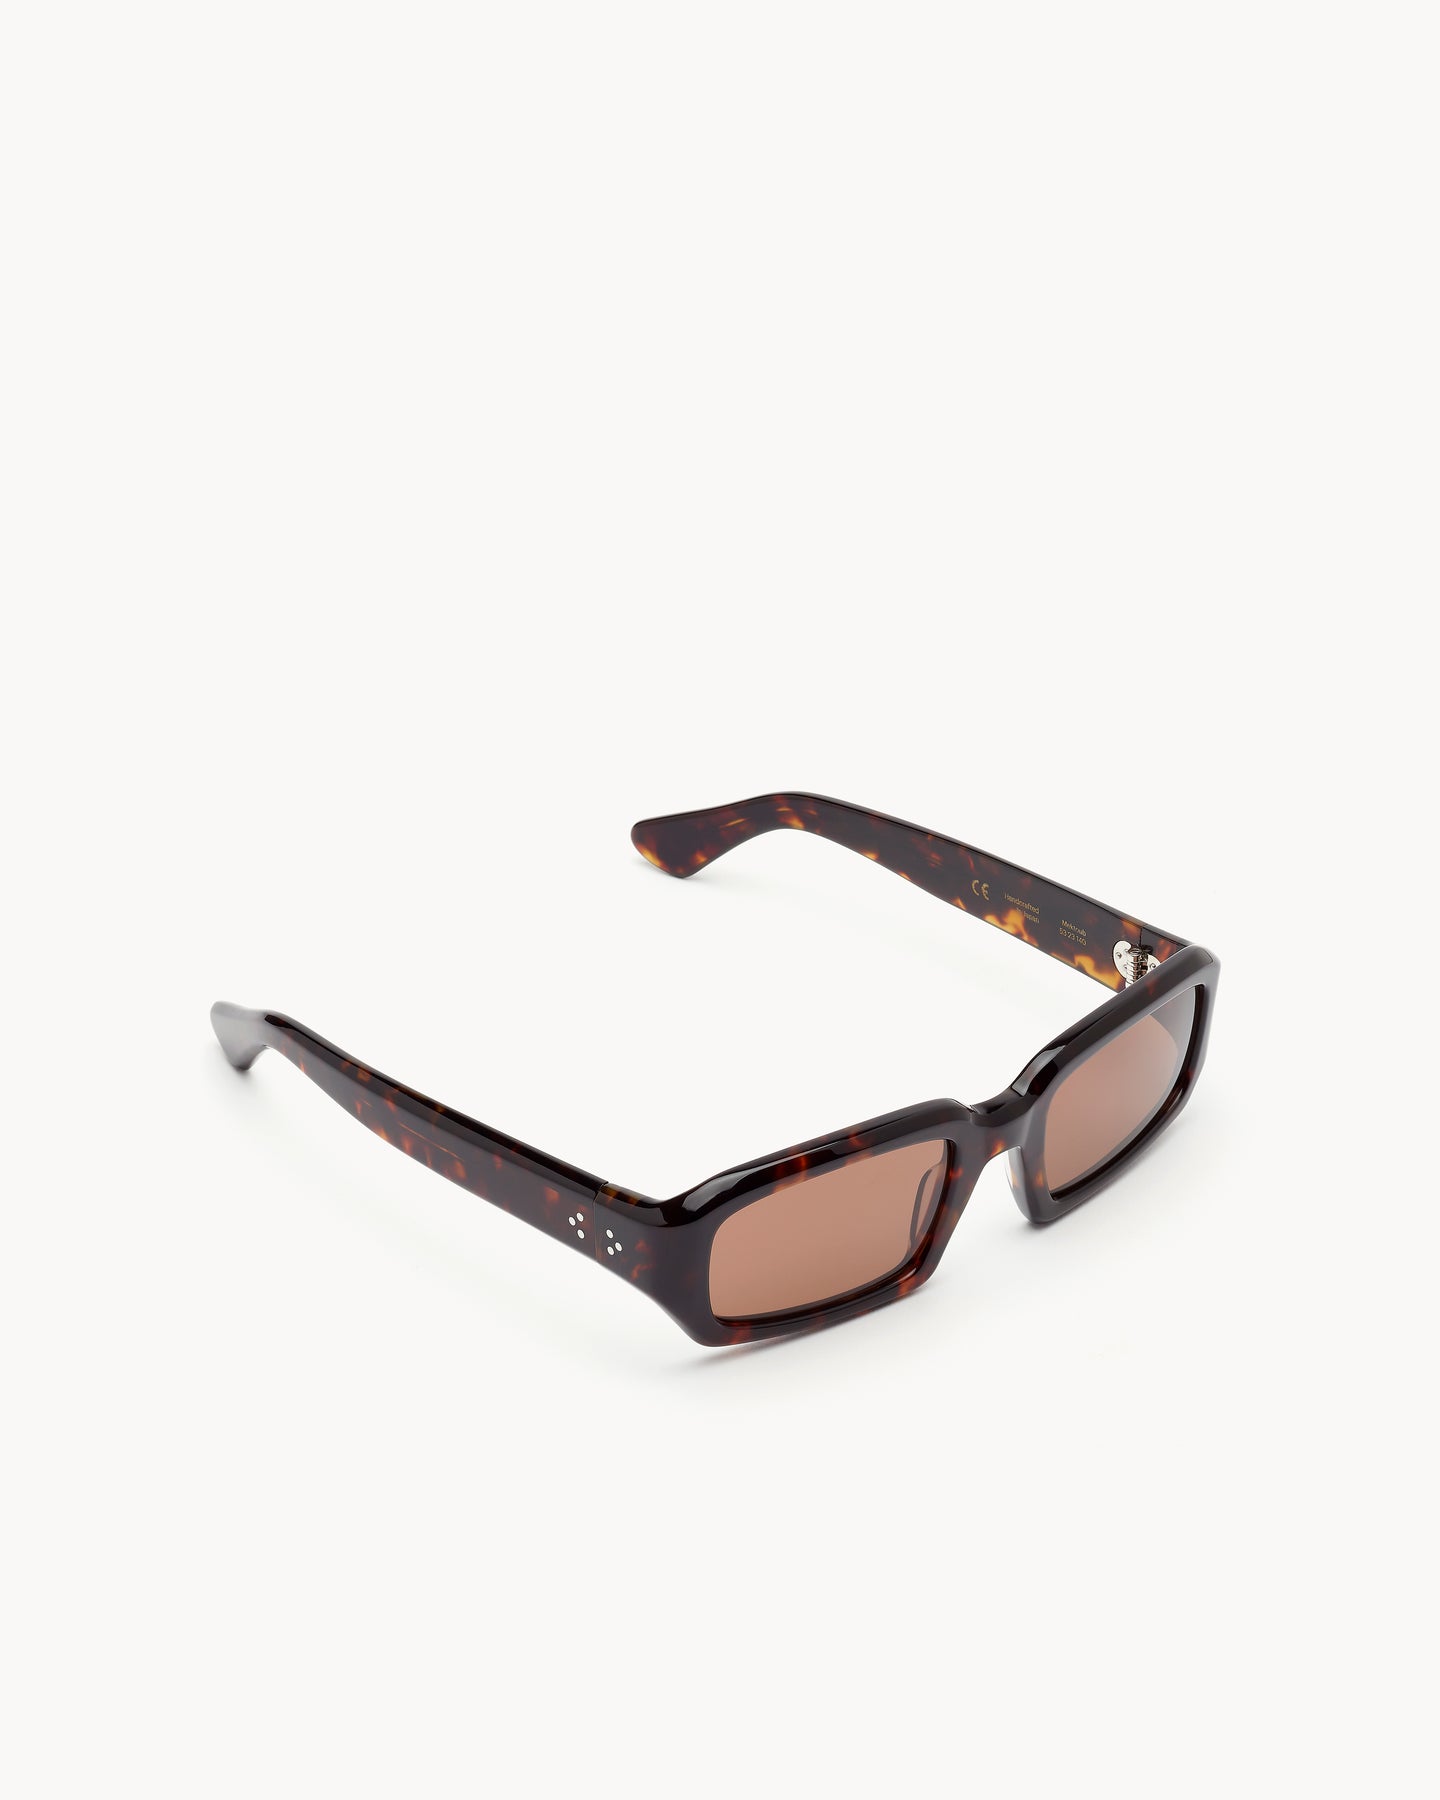 Port Tanger Mektoub Sunglasses in Dark Tortoise Acetate and Tobacco Lenses 2